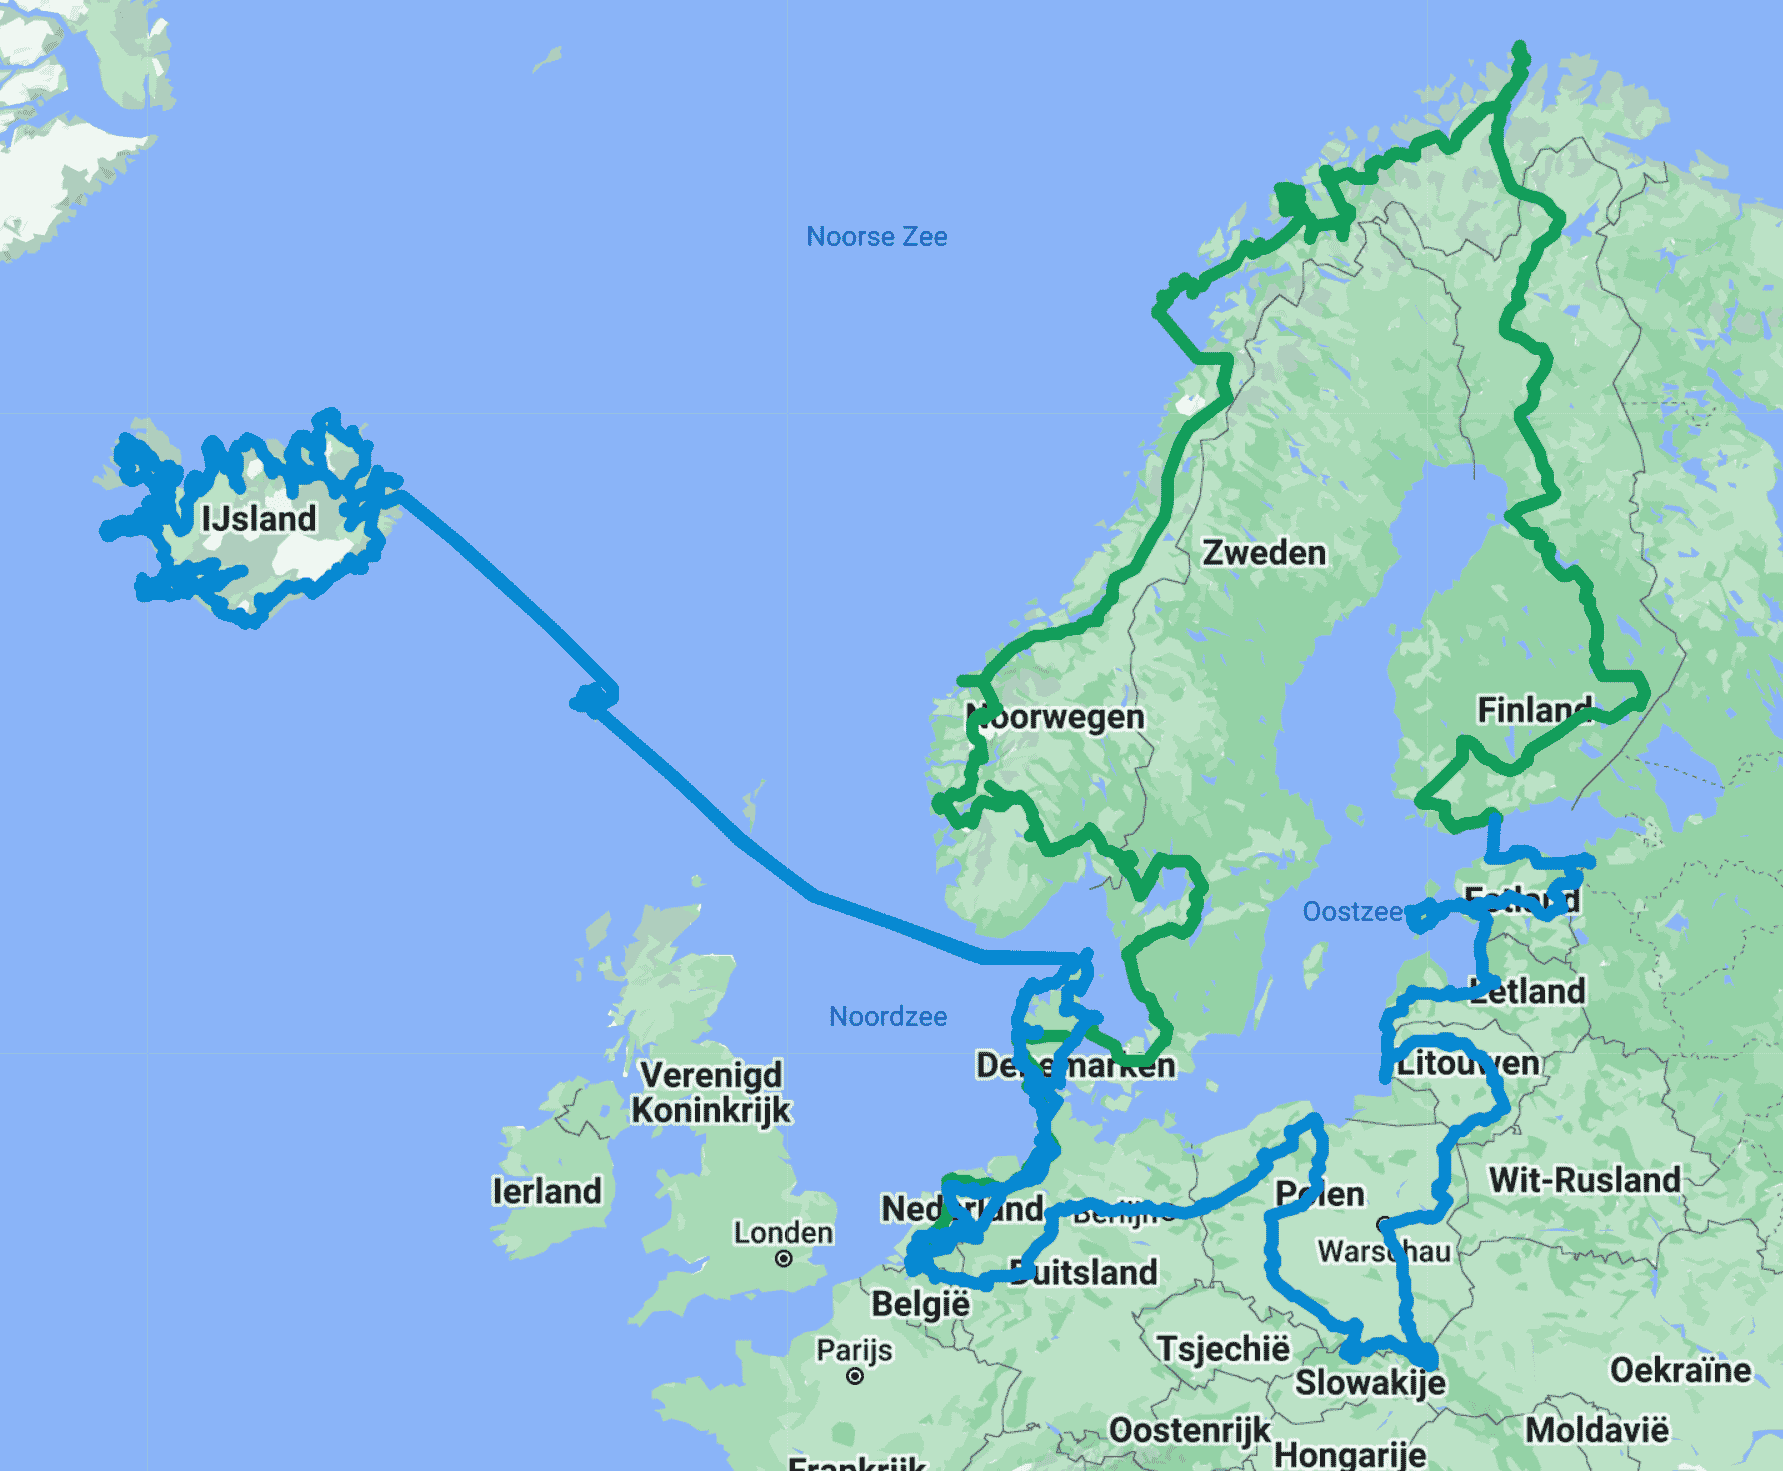 Onze overland route door winters Noord-Europa (groen: 2021, blauw:2022)